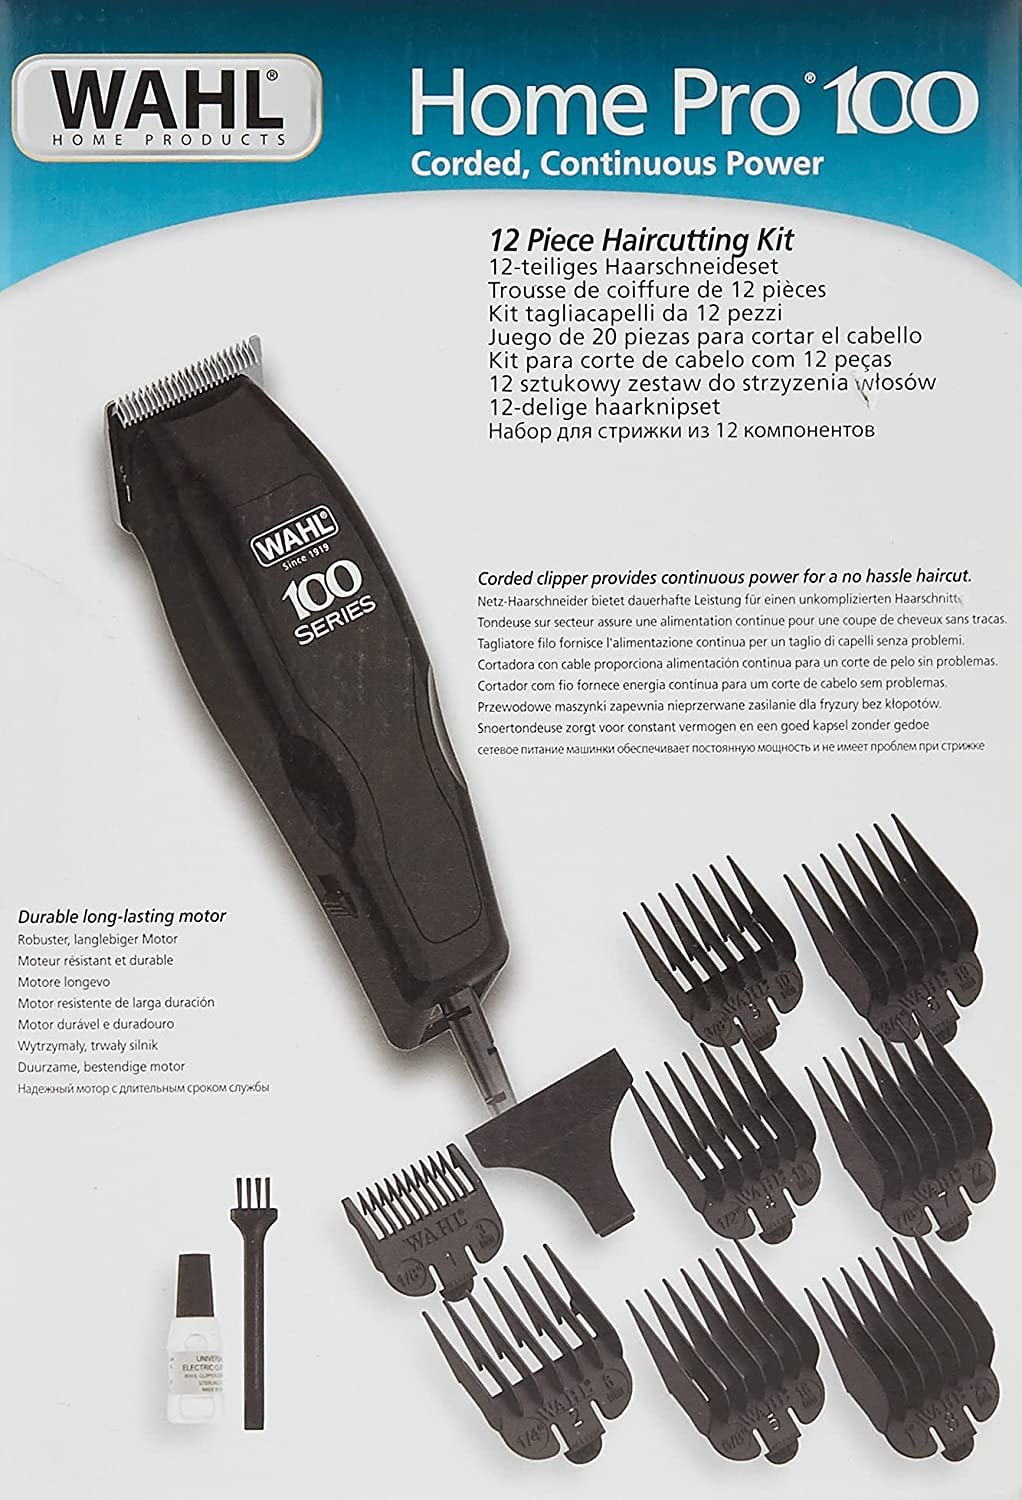 مجموعة قص الشعر من سلسلة WAHL Home Pro 100، مجموعة ماكينة قص الشعر السلكية للمنزل، 8 ملحقات أمشاط لأطوال قص متعددة، شفرات دقيقة للشحذ الذاتي (((مستخدمة)))